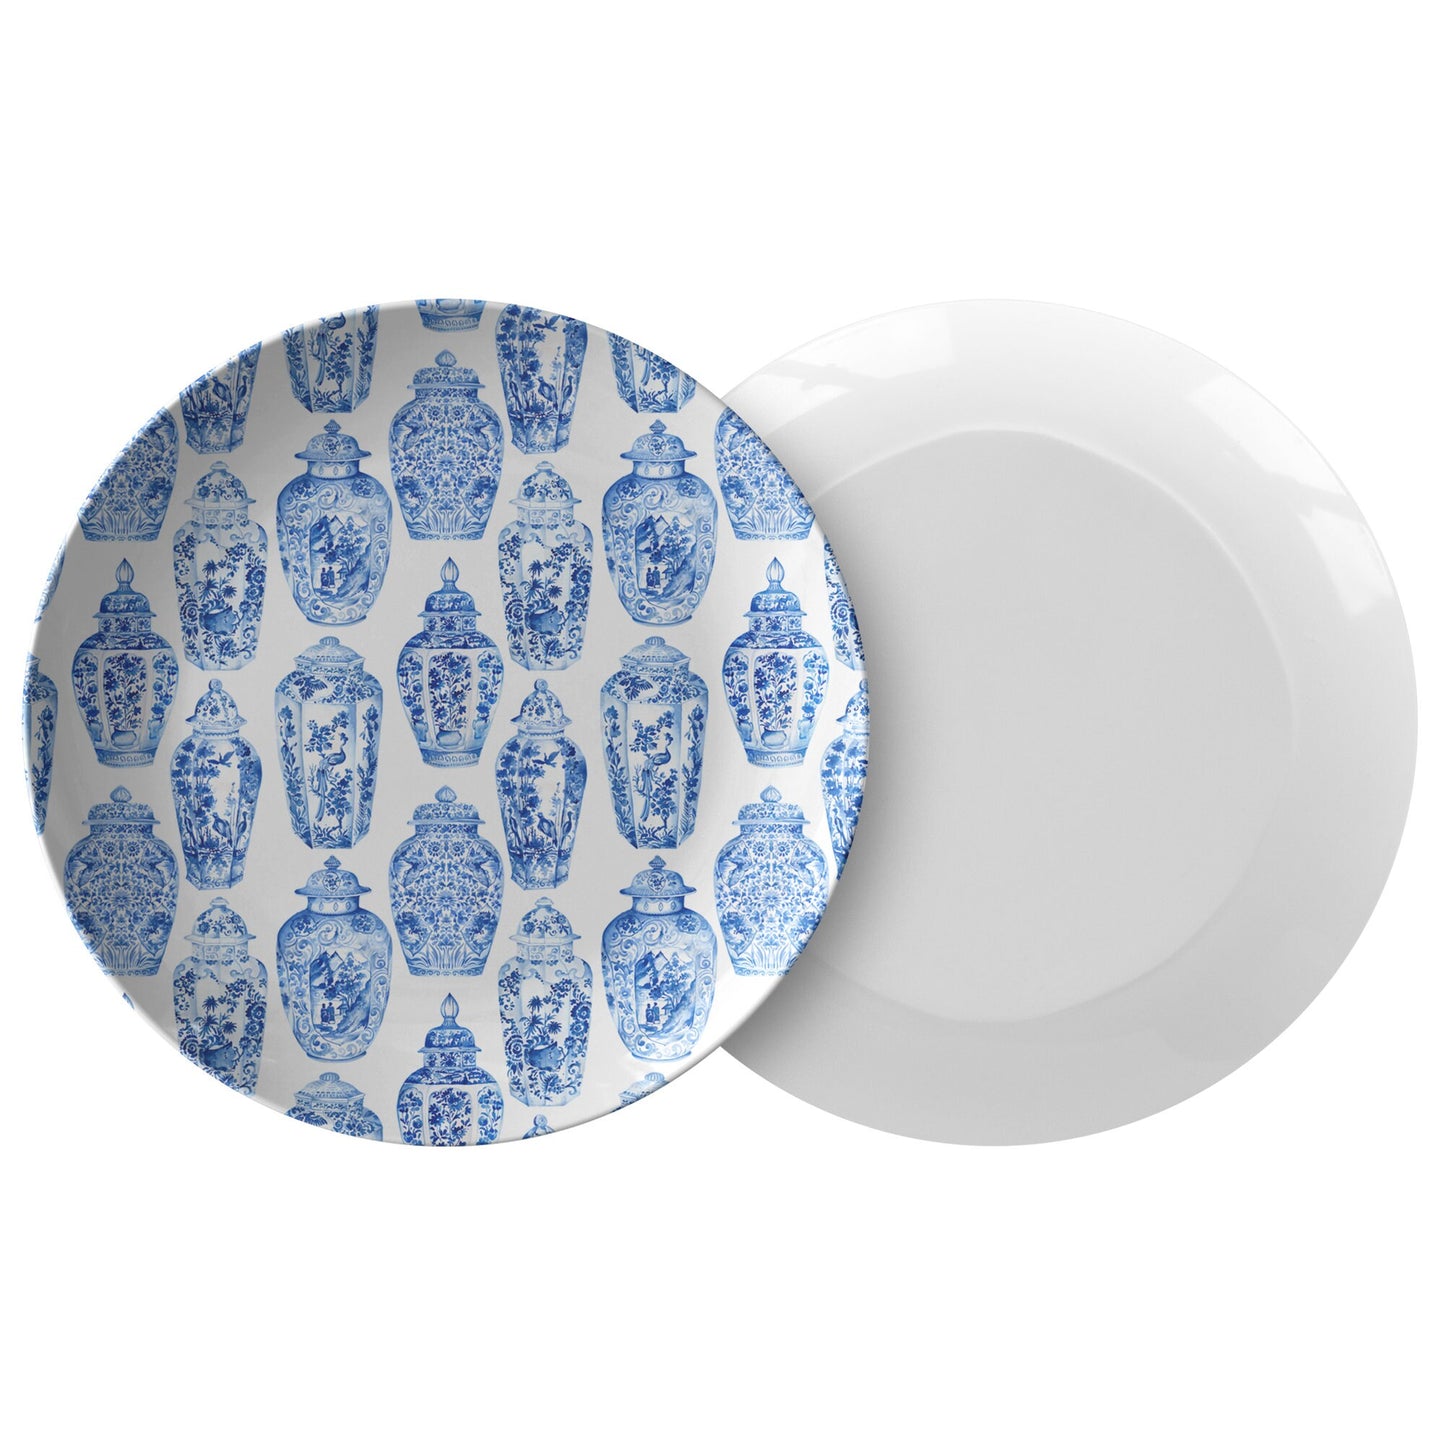 Ginger Jars Plates blue & white Plastic